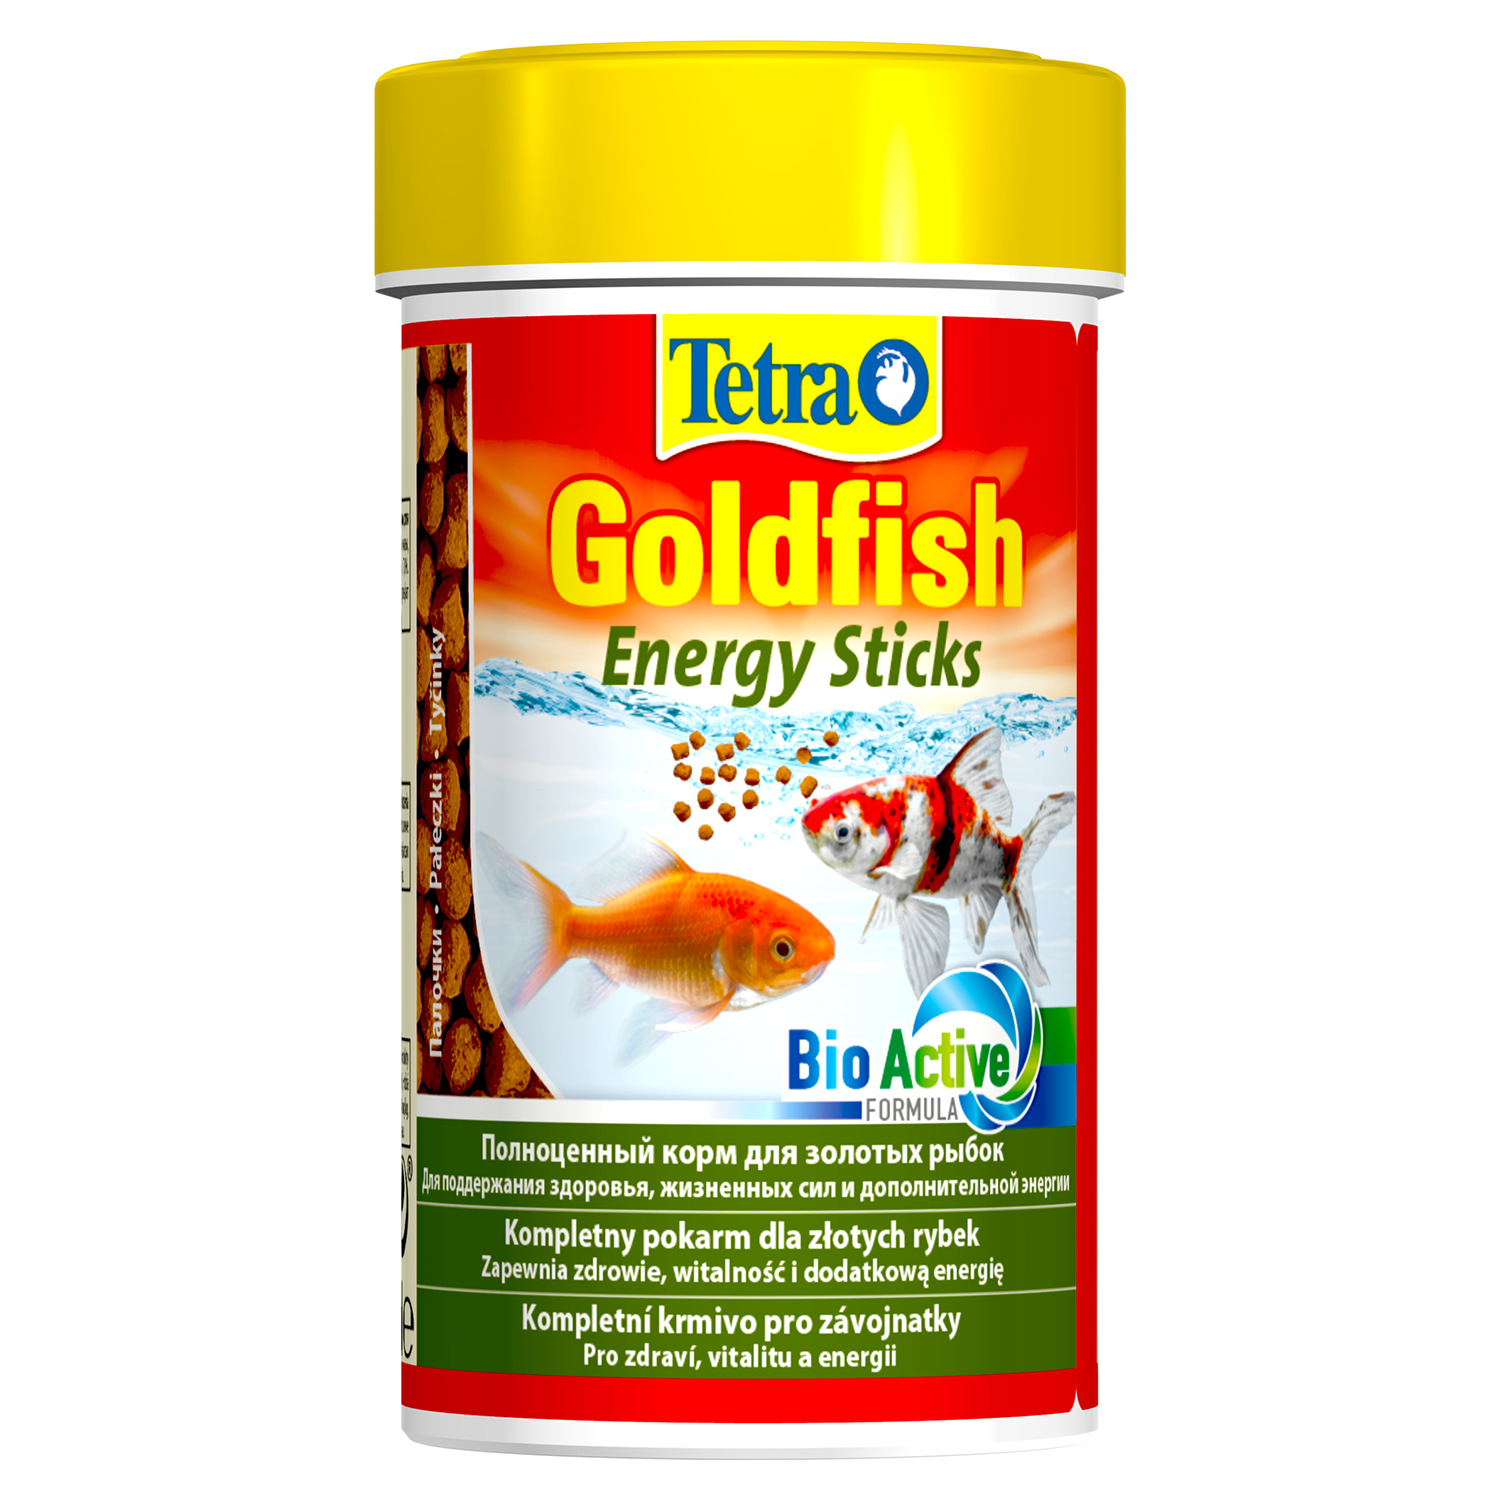 Tetra Goldfish Energy Sticks энергетический корм для золотых рыб в палочках